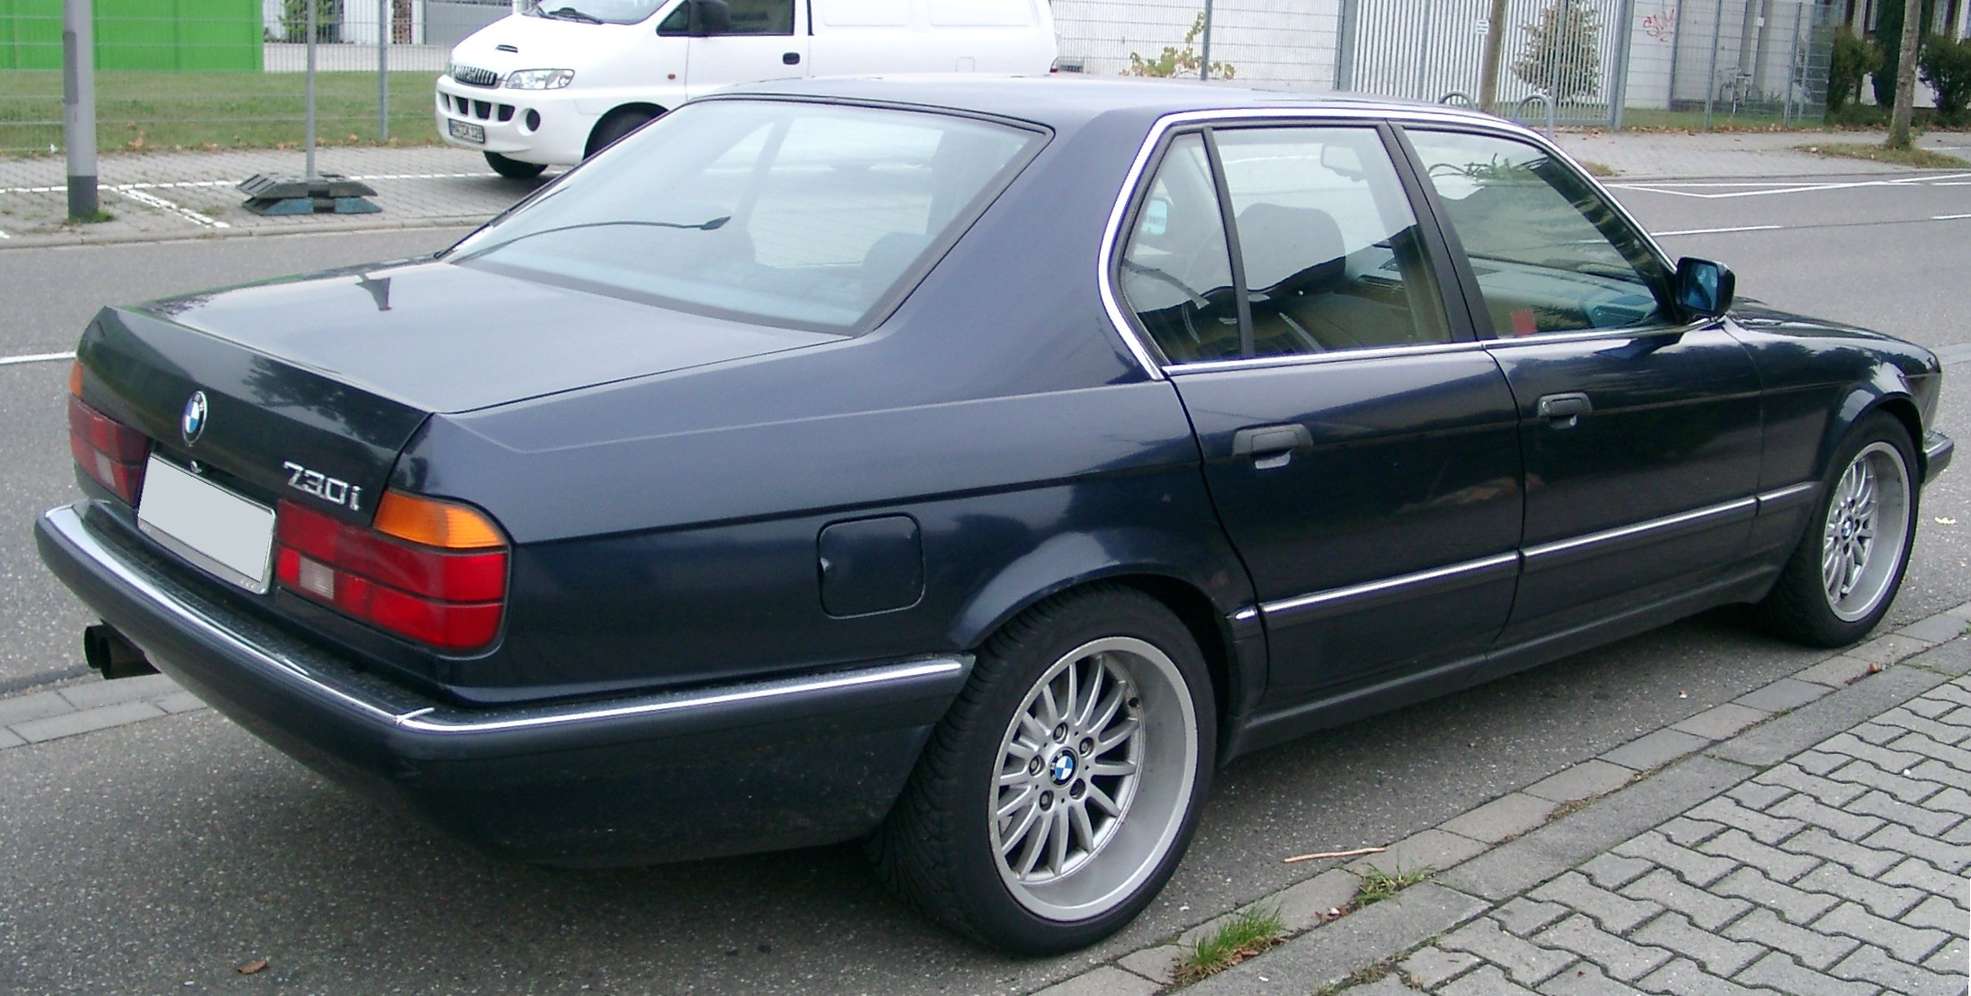 BMW_730i